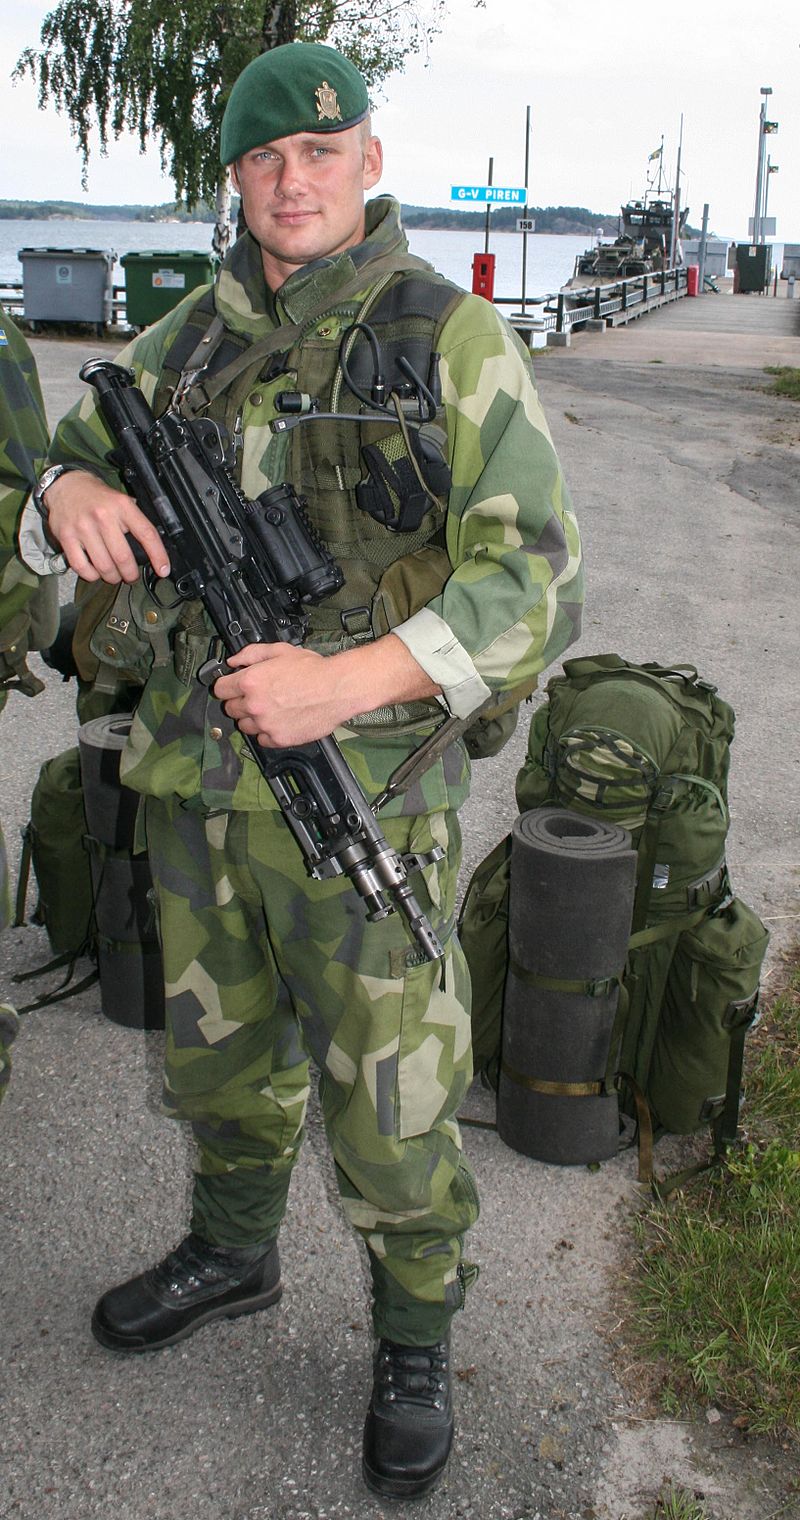 800px-Soldier_at_Berga_navy_base%2C_Sweden.jpg